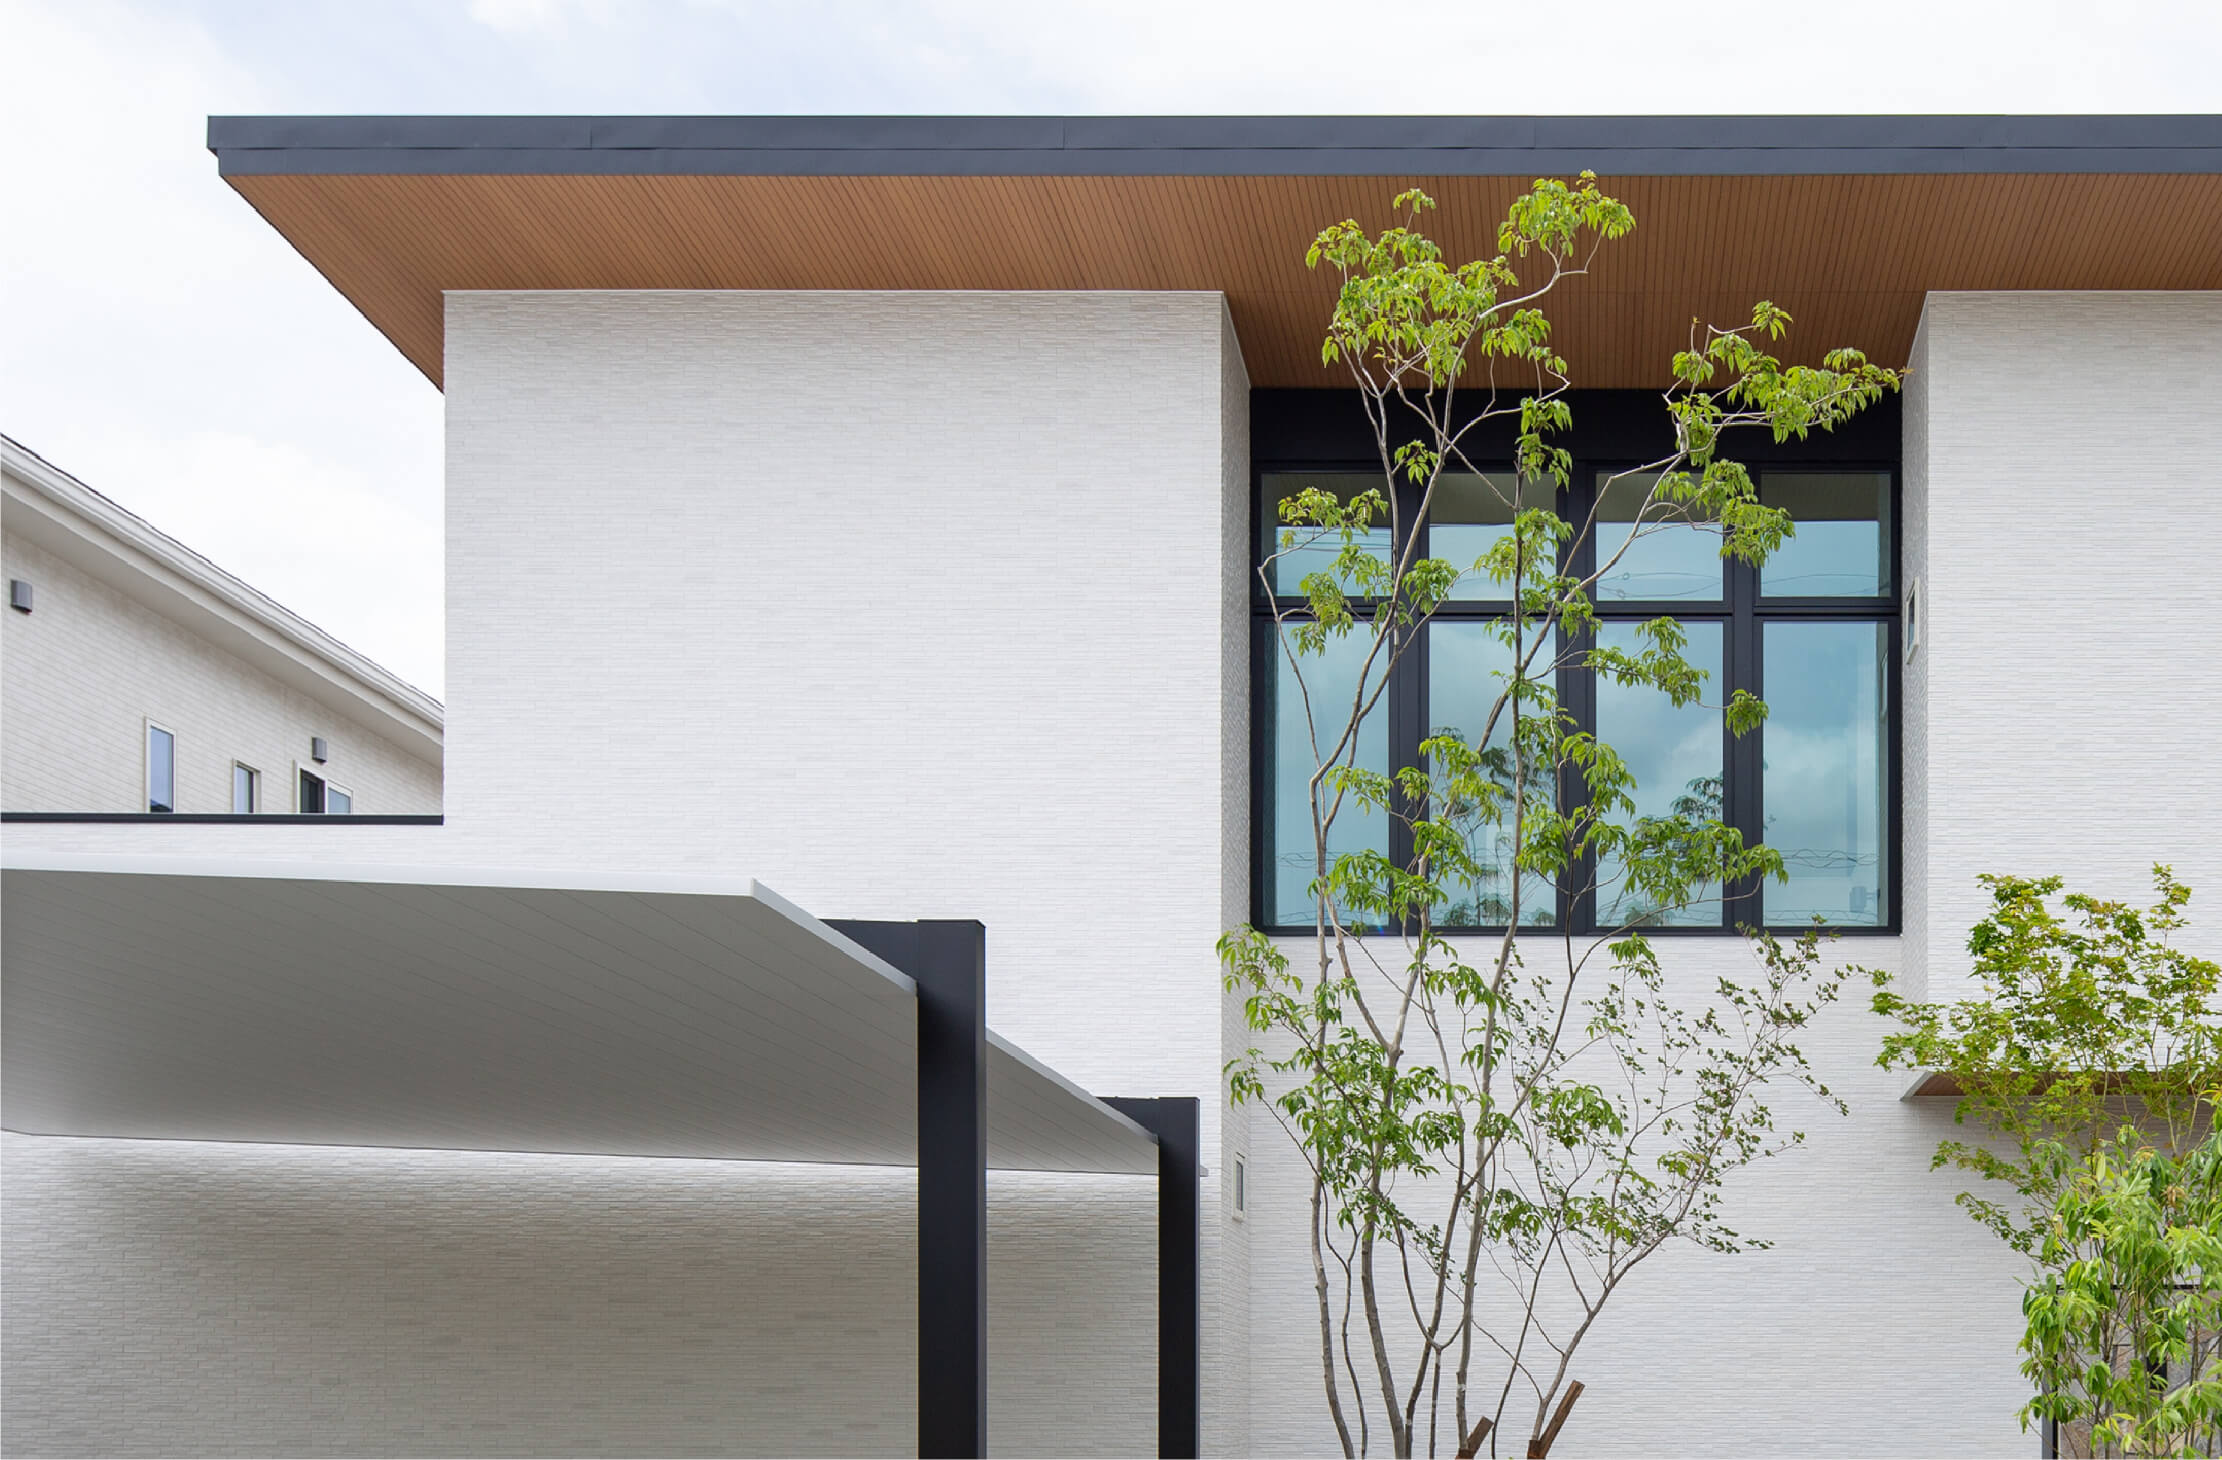 Chất lượng, Giá cả, Dịch vụ Đơn vị xây dựng nhà số 1 Nhật Bản Tạo ngôi nhà tốt nhất ở Nhật Bản cho Aqura Home